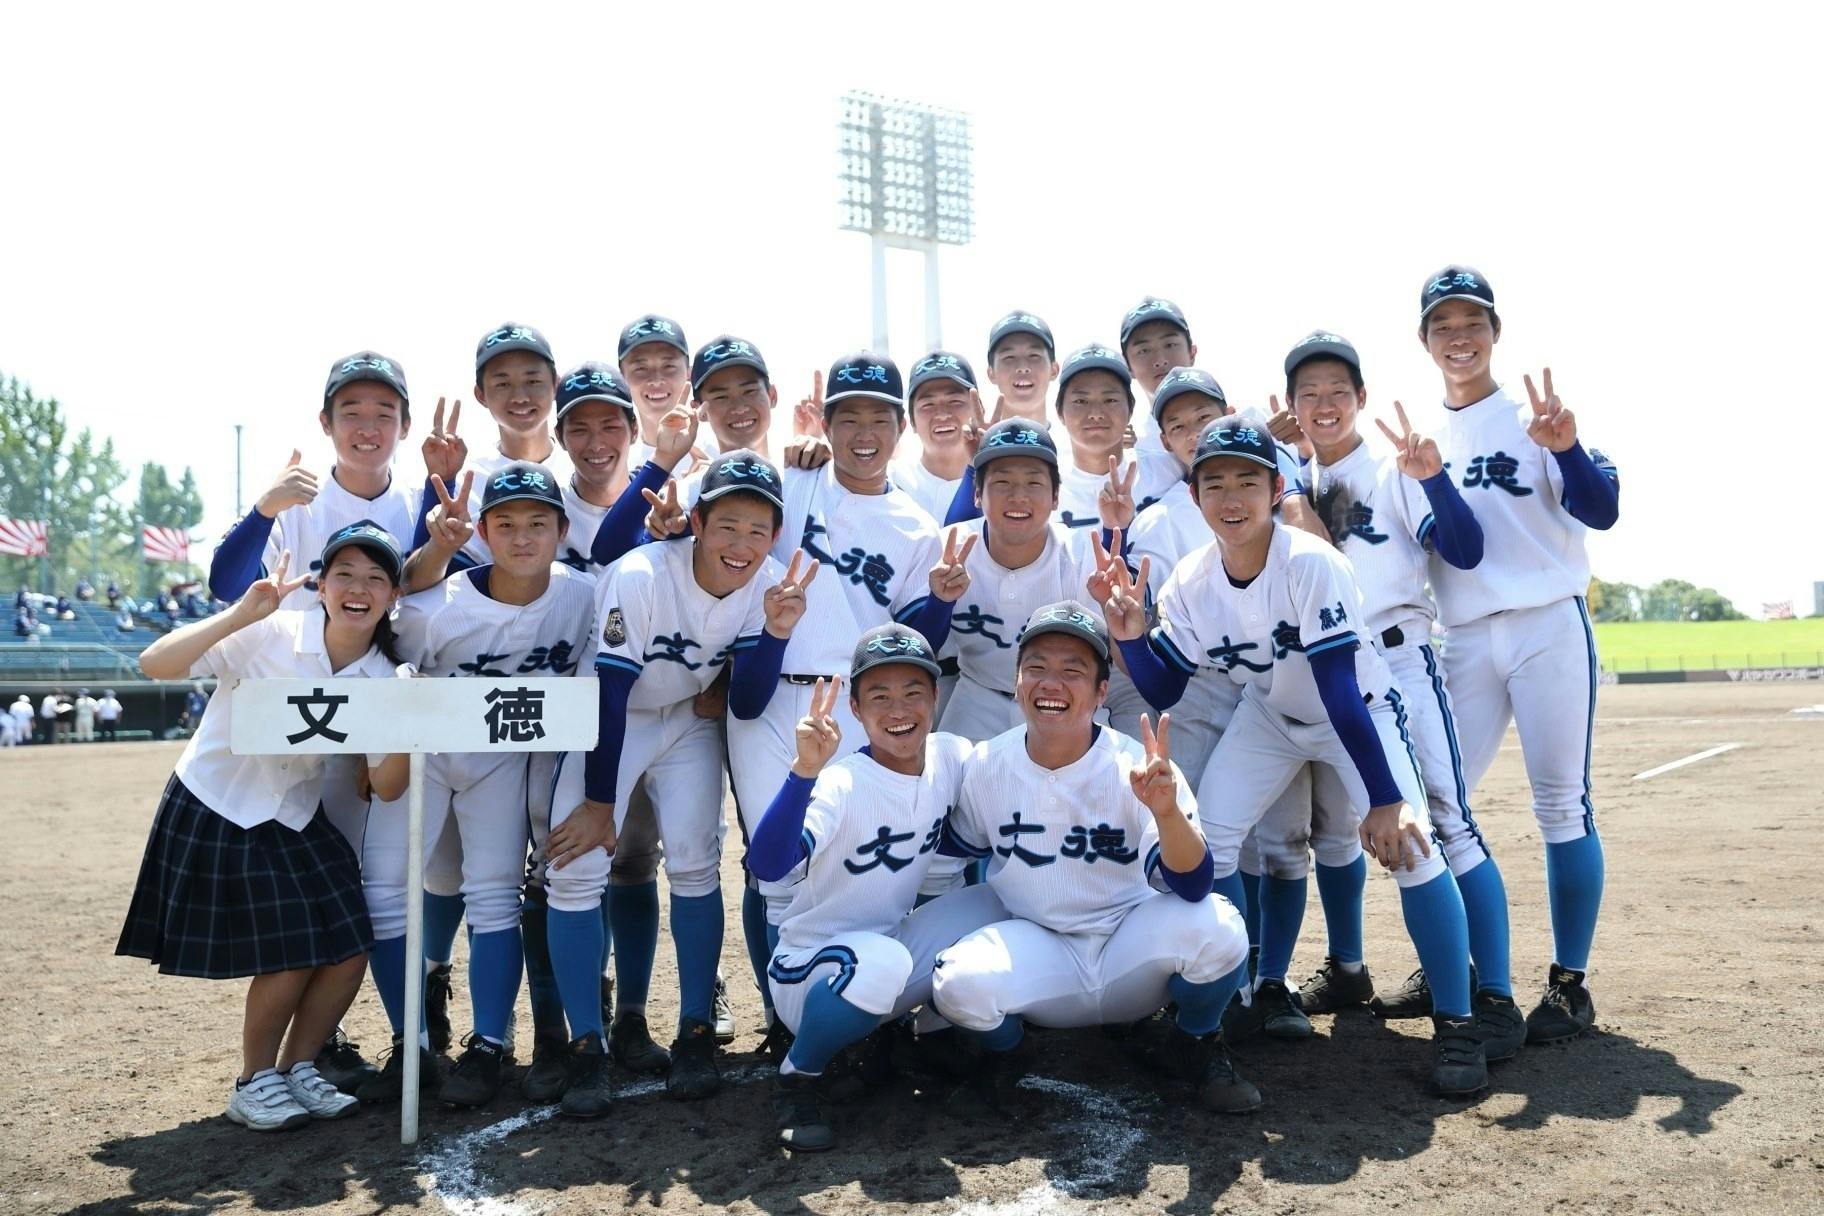 全国激安 倉吉北高校(鳥取) 野球部 公式戦用 ユニフォーム 高校野球 